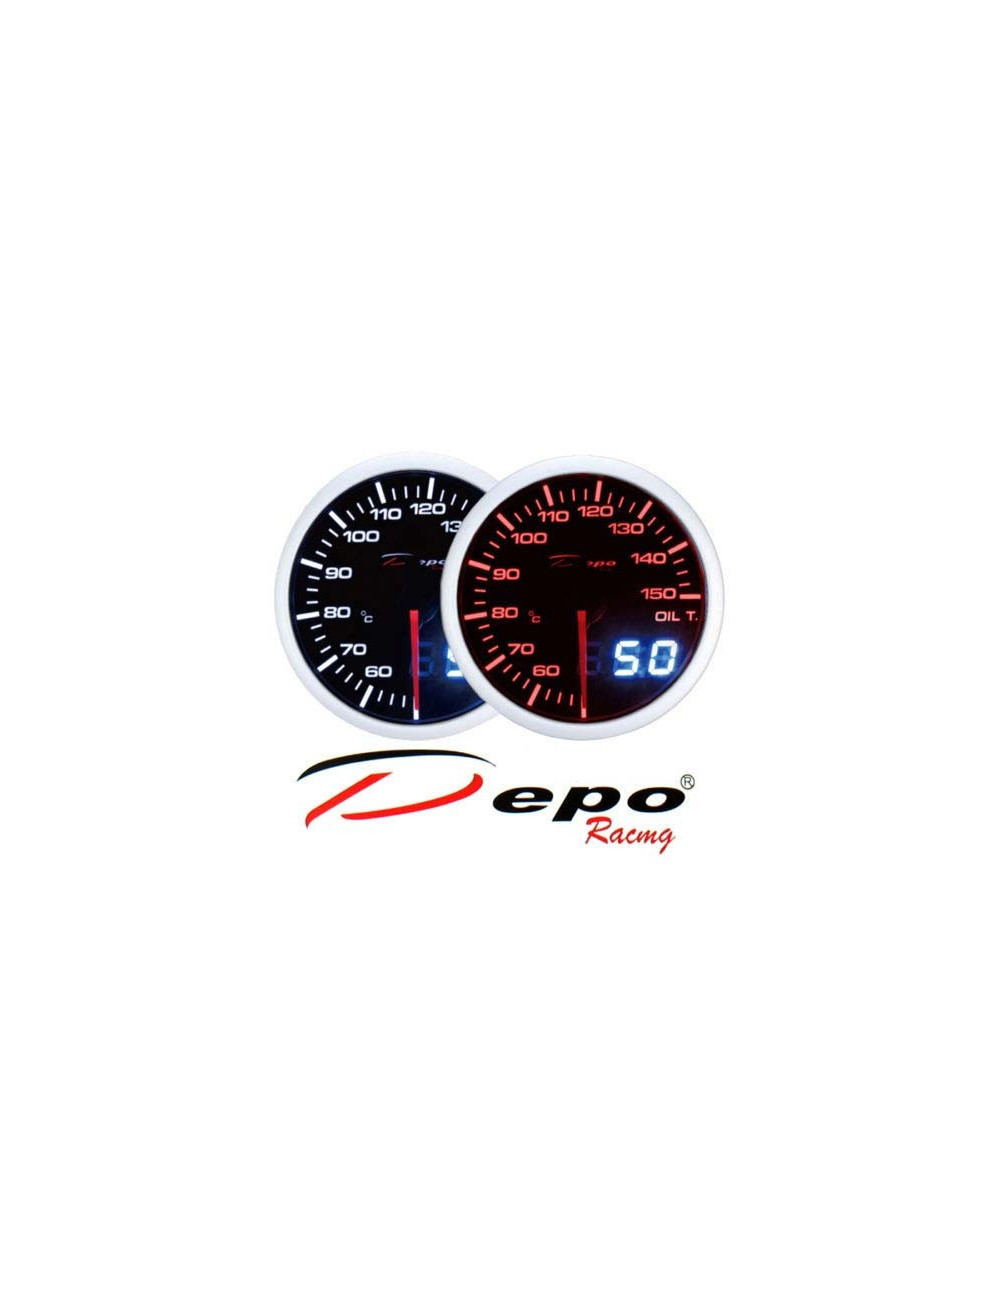 DEPO RACING Manometro Dual View Temperatura Olio 50-150° DEPO Racing